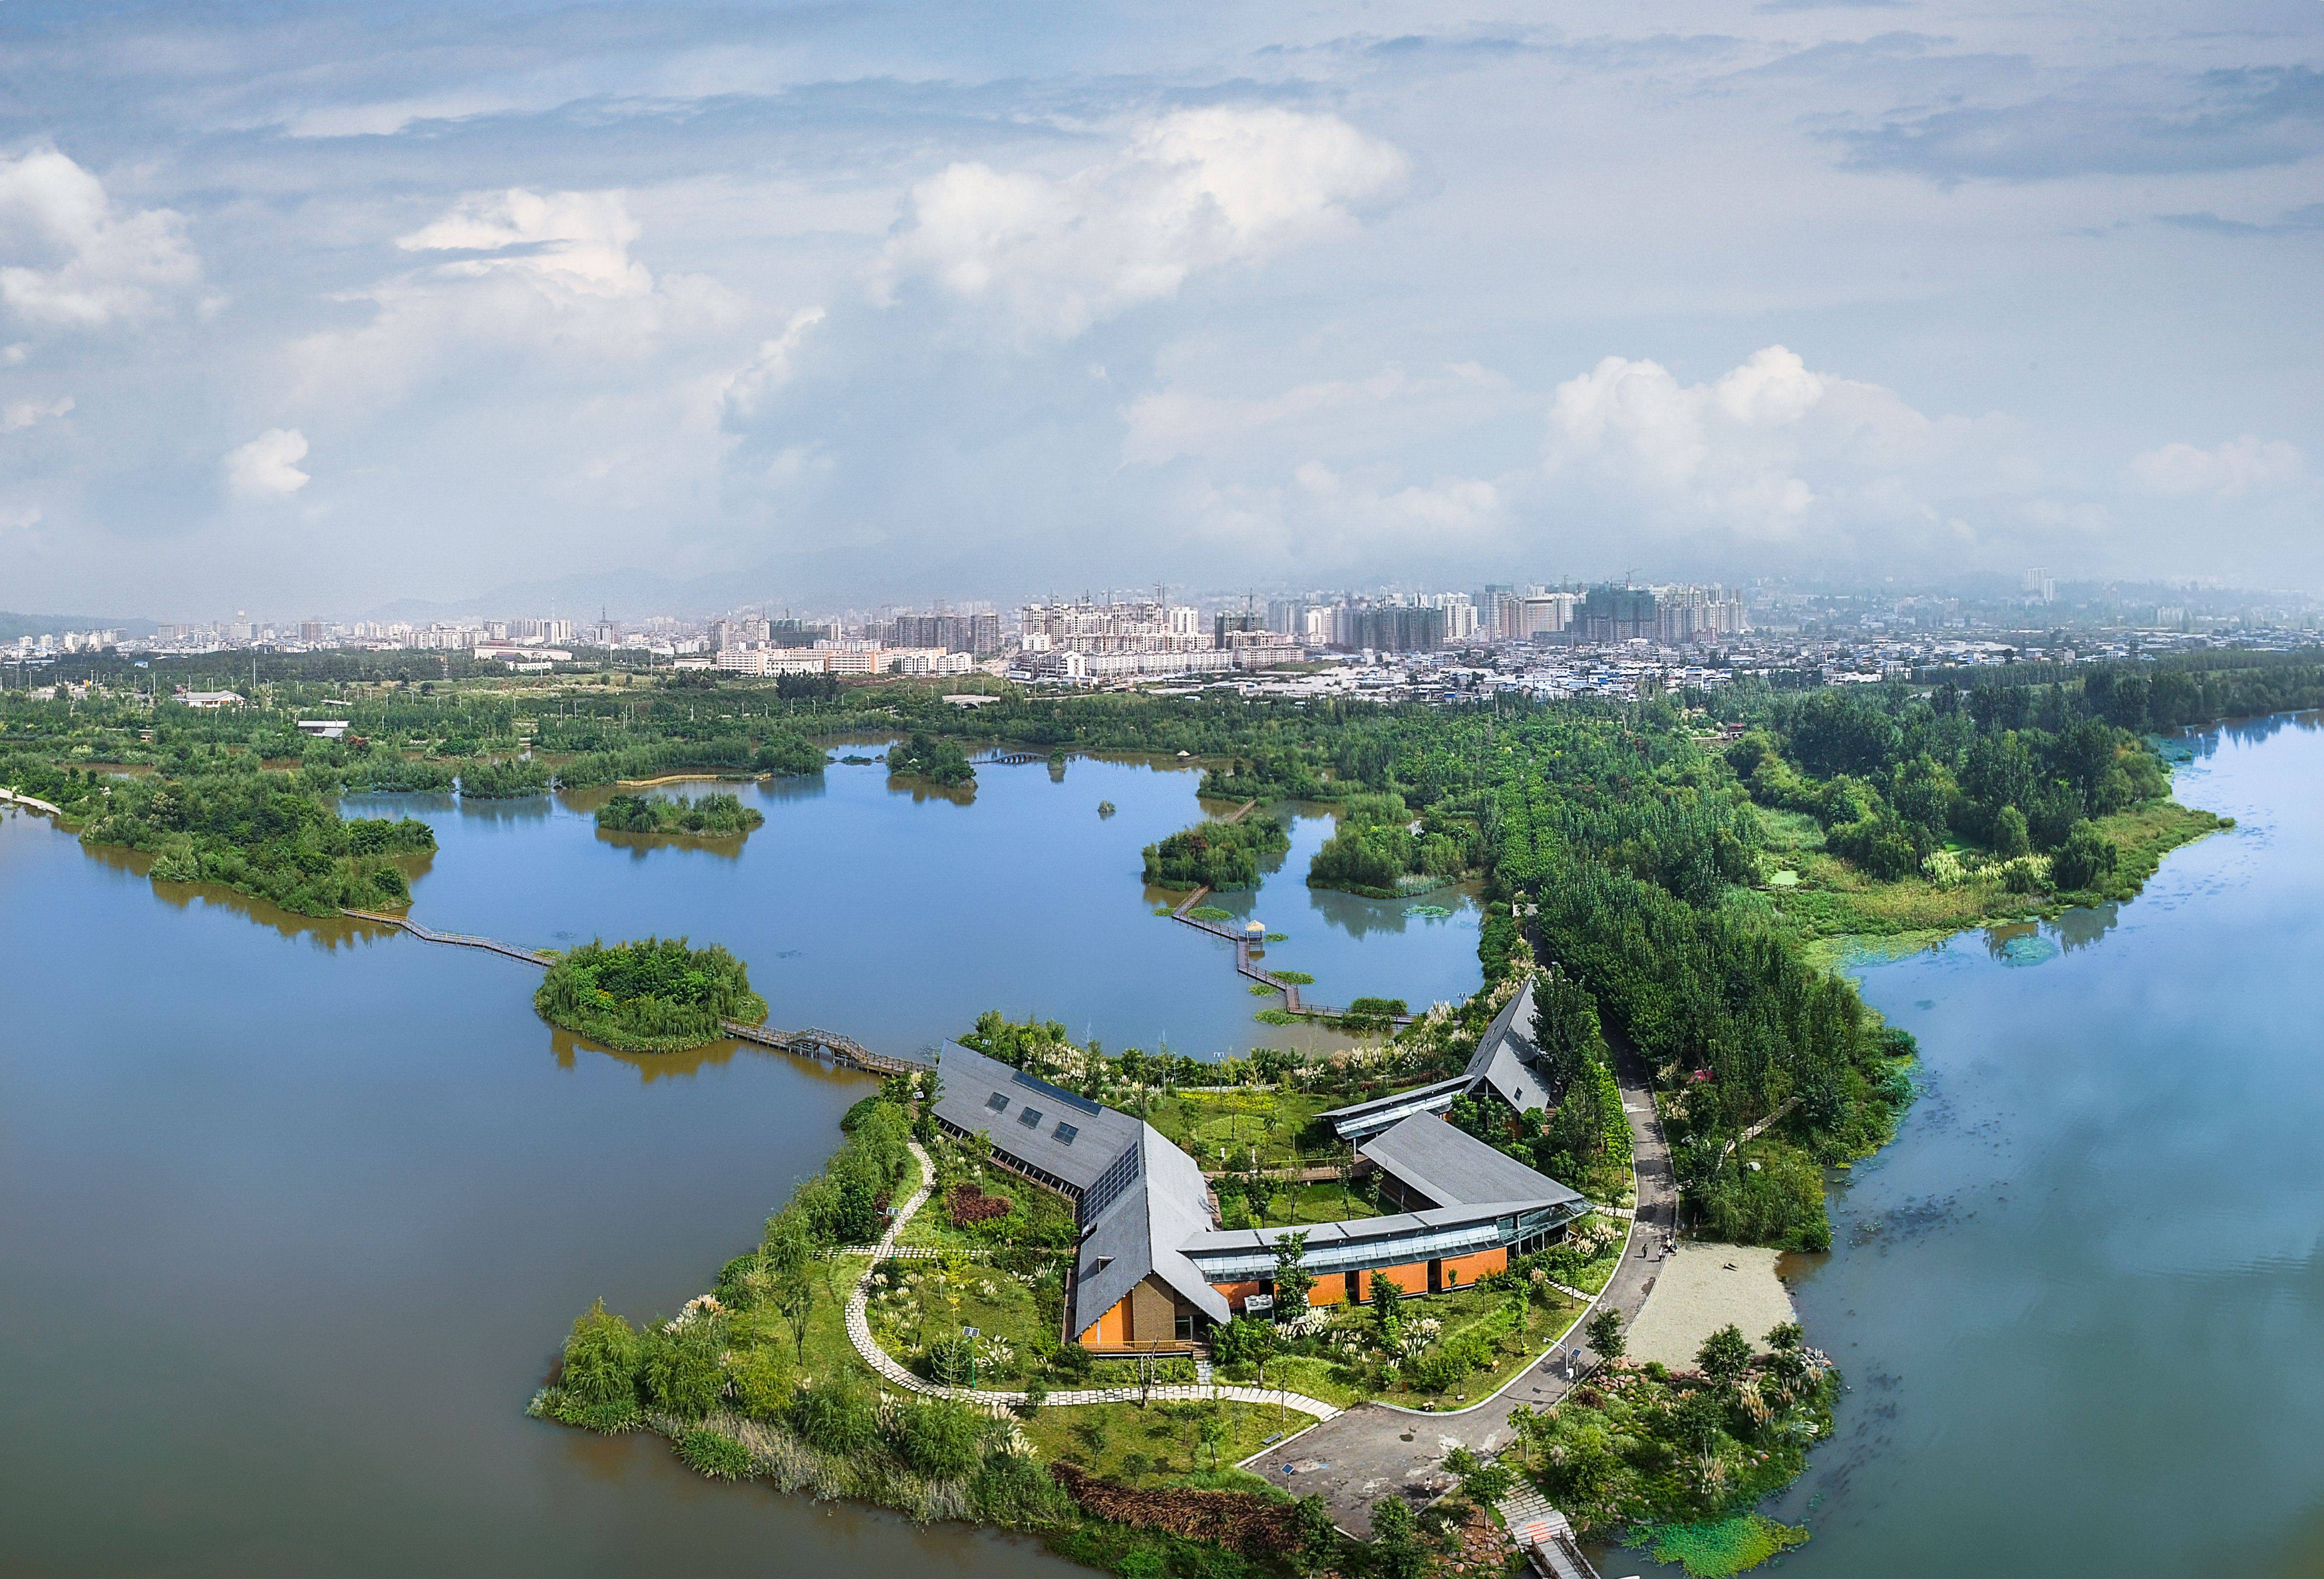 叶鹏据悉,邛海国家湿地公园位于四川省西昌市,距离城区最近不足1公里